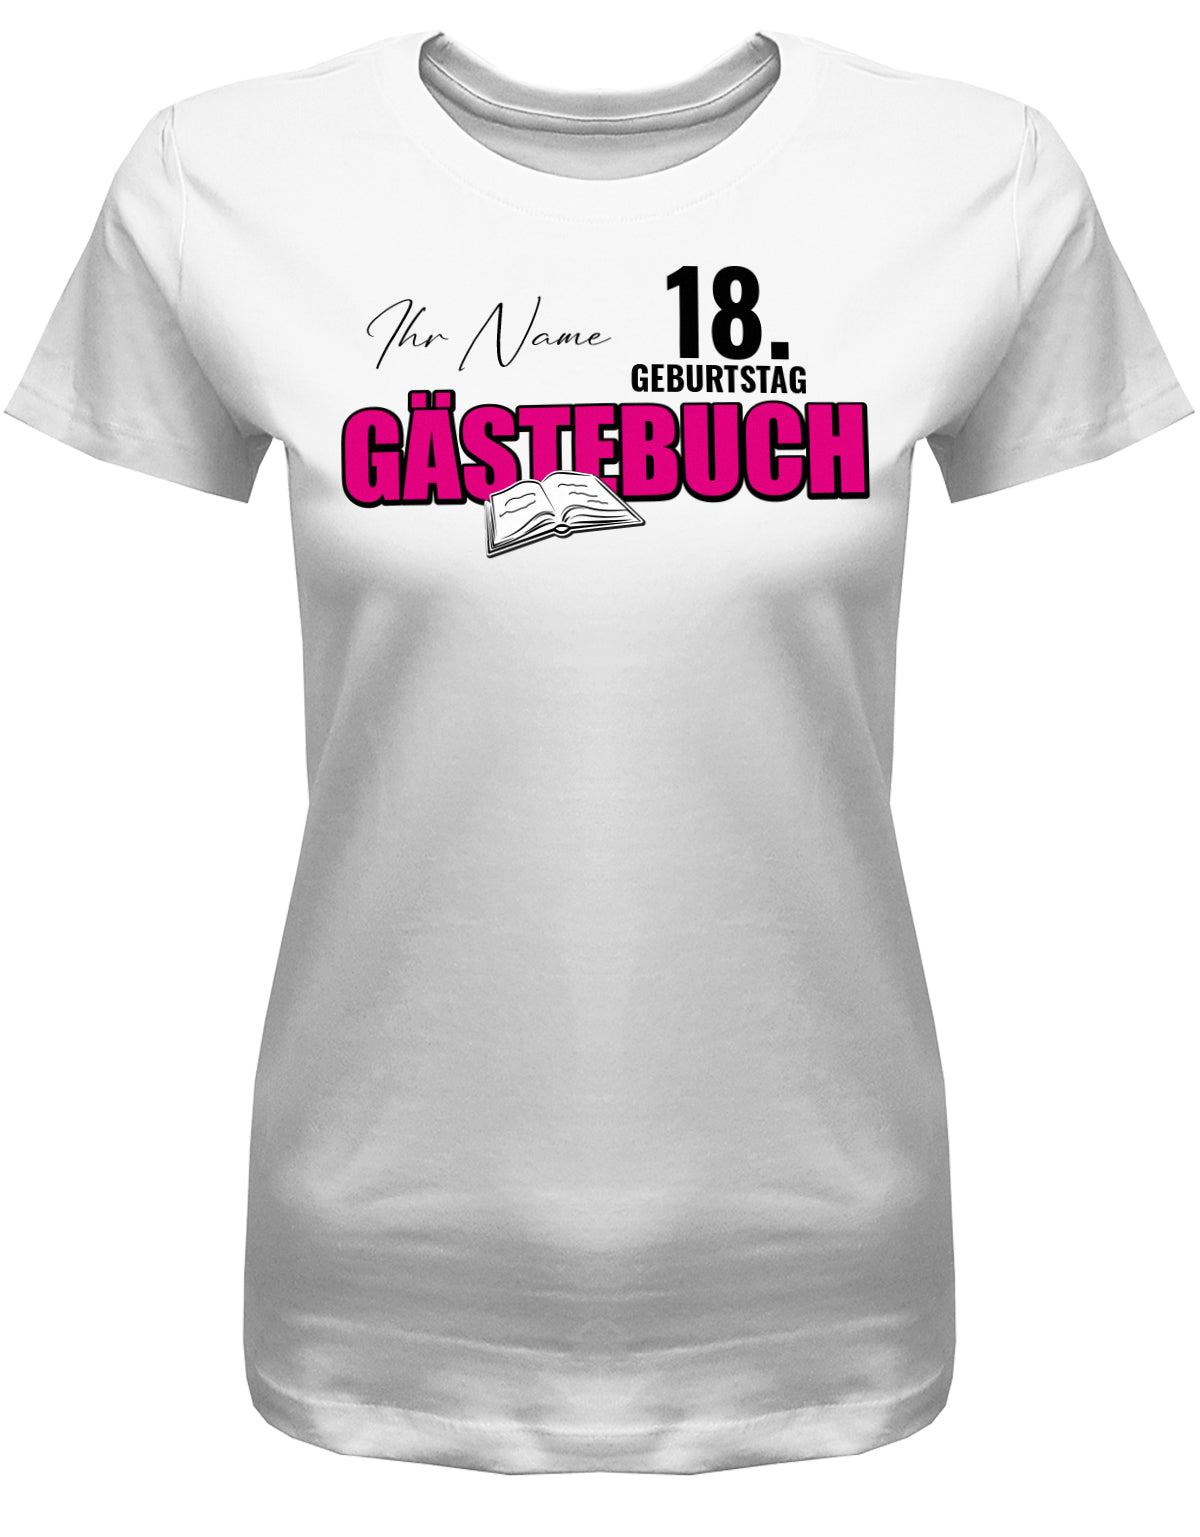 Gästeliste mit Namen – Gästebuch 18 Geburtstag Shirt Mädchen – myShirtStore